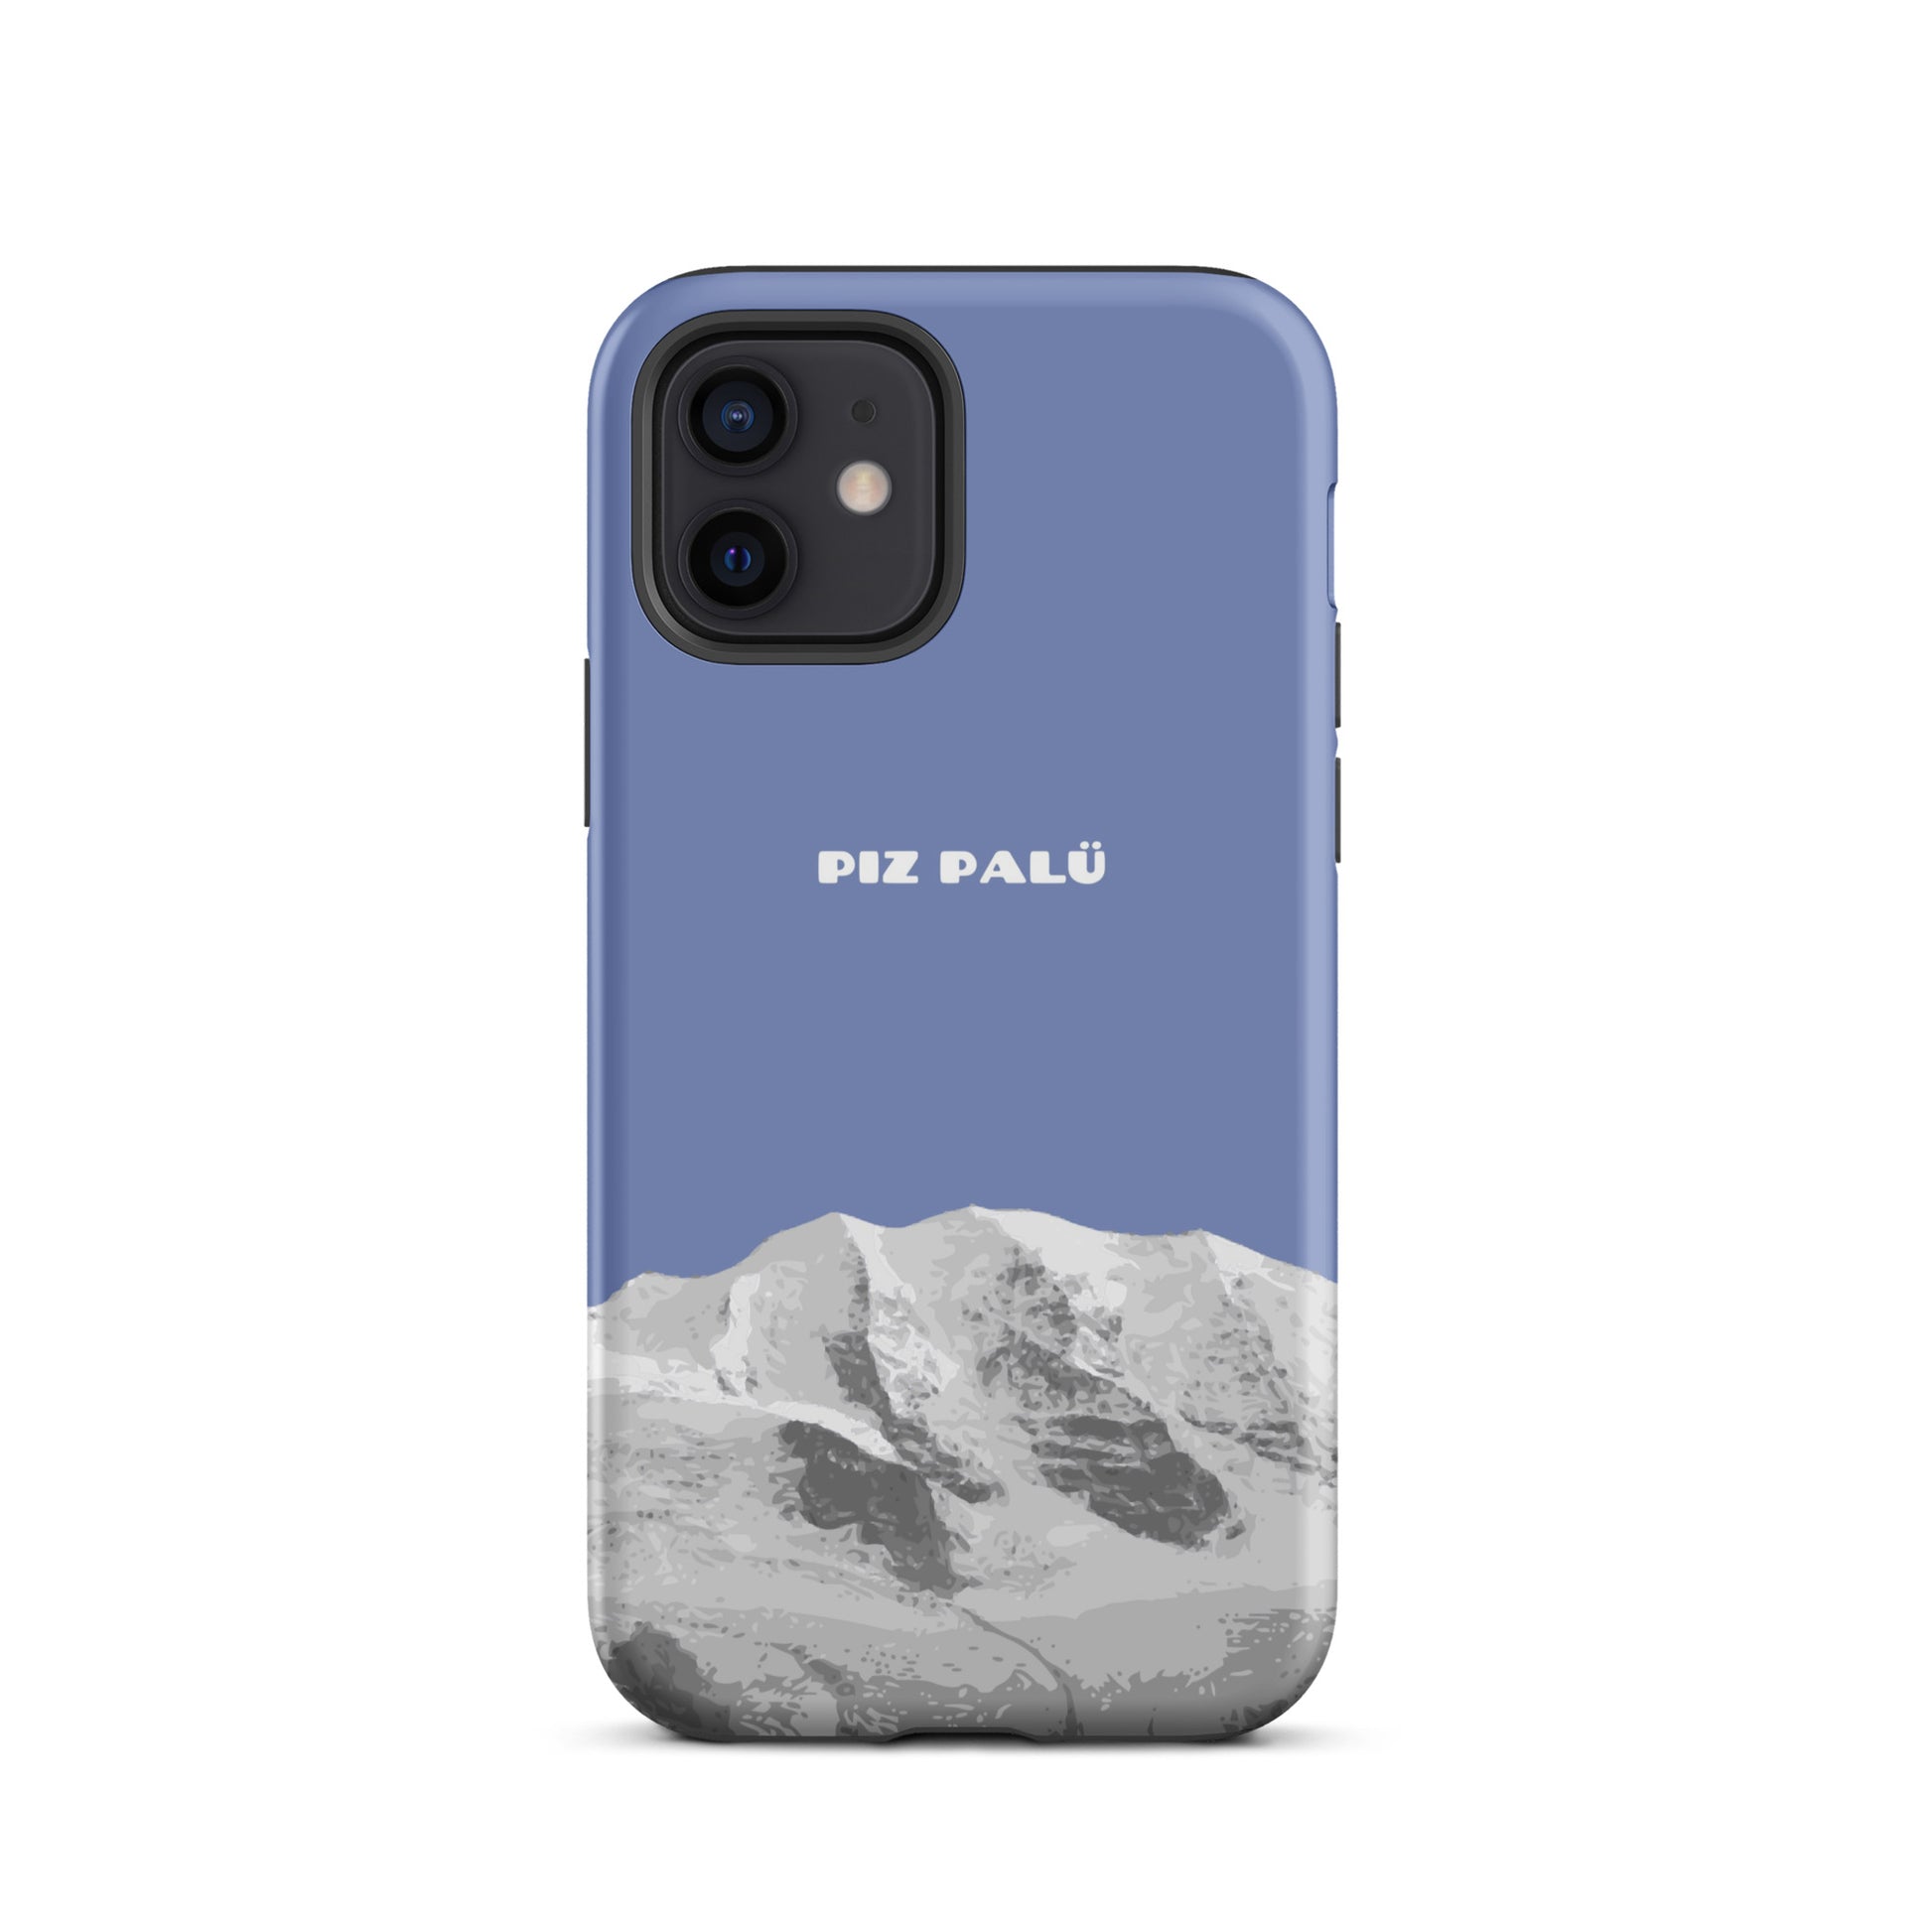 Hülle für das iPhone 12 von Apple in der Farbe Pastellblau, dass den Piz Palü in Graubünden zeigt.